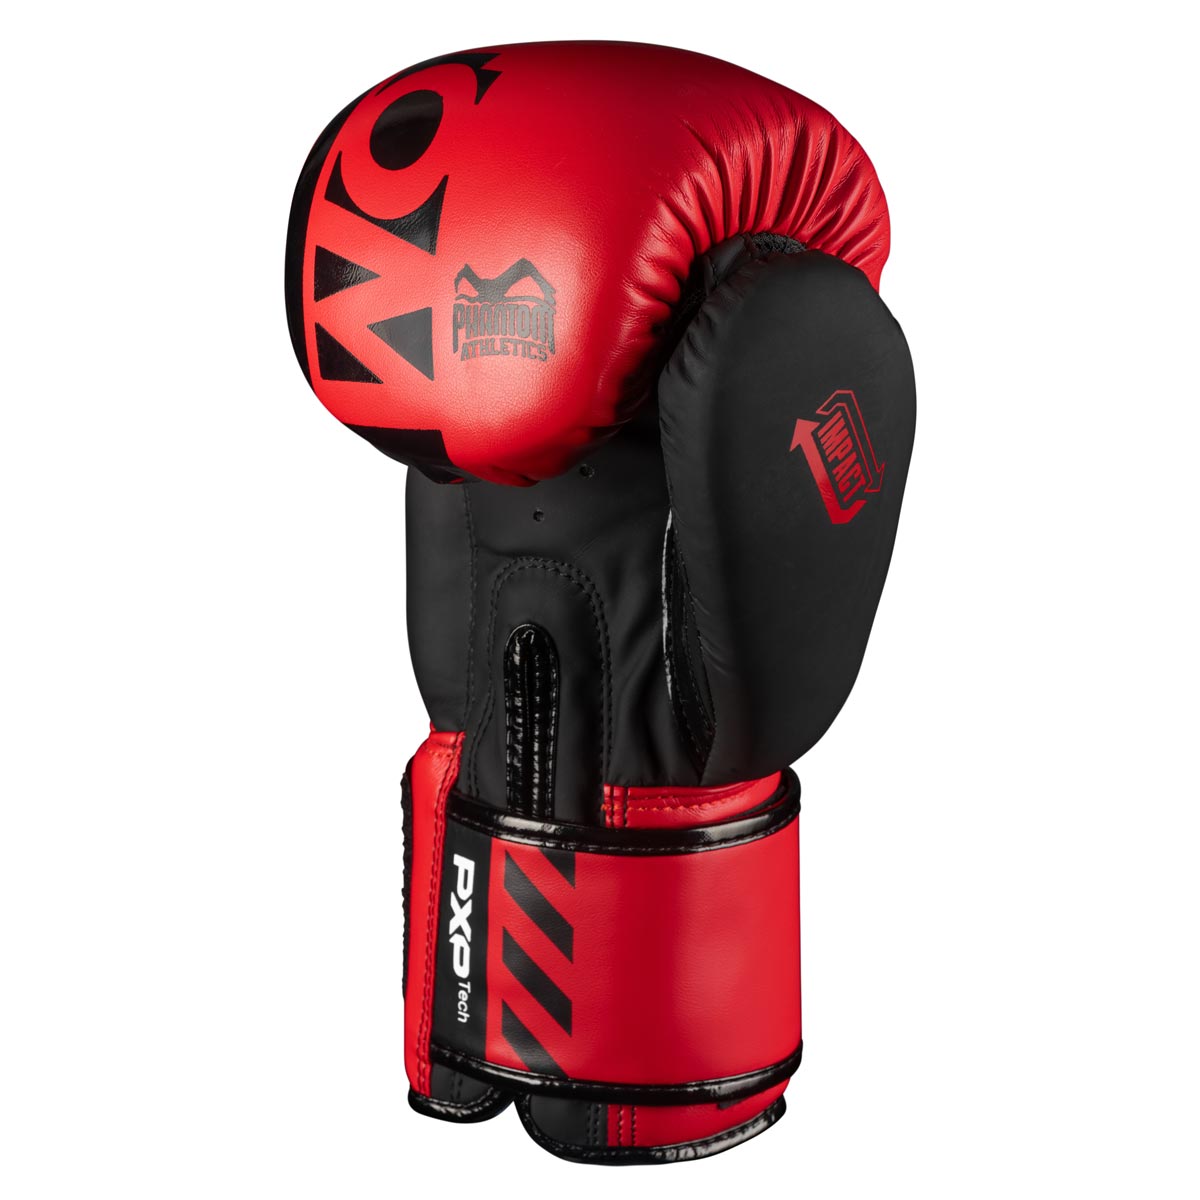 Phantom Boxhandschuhe APEX in der limitierten RED Edition. Perfekte Handschuhe für dein Kampfsporttraining wie z.B MMA, Muay Thai, Thaiboxen, K1 oder Boxen.